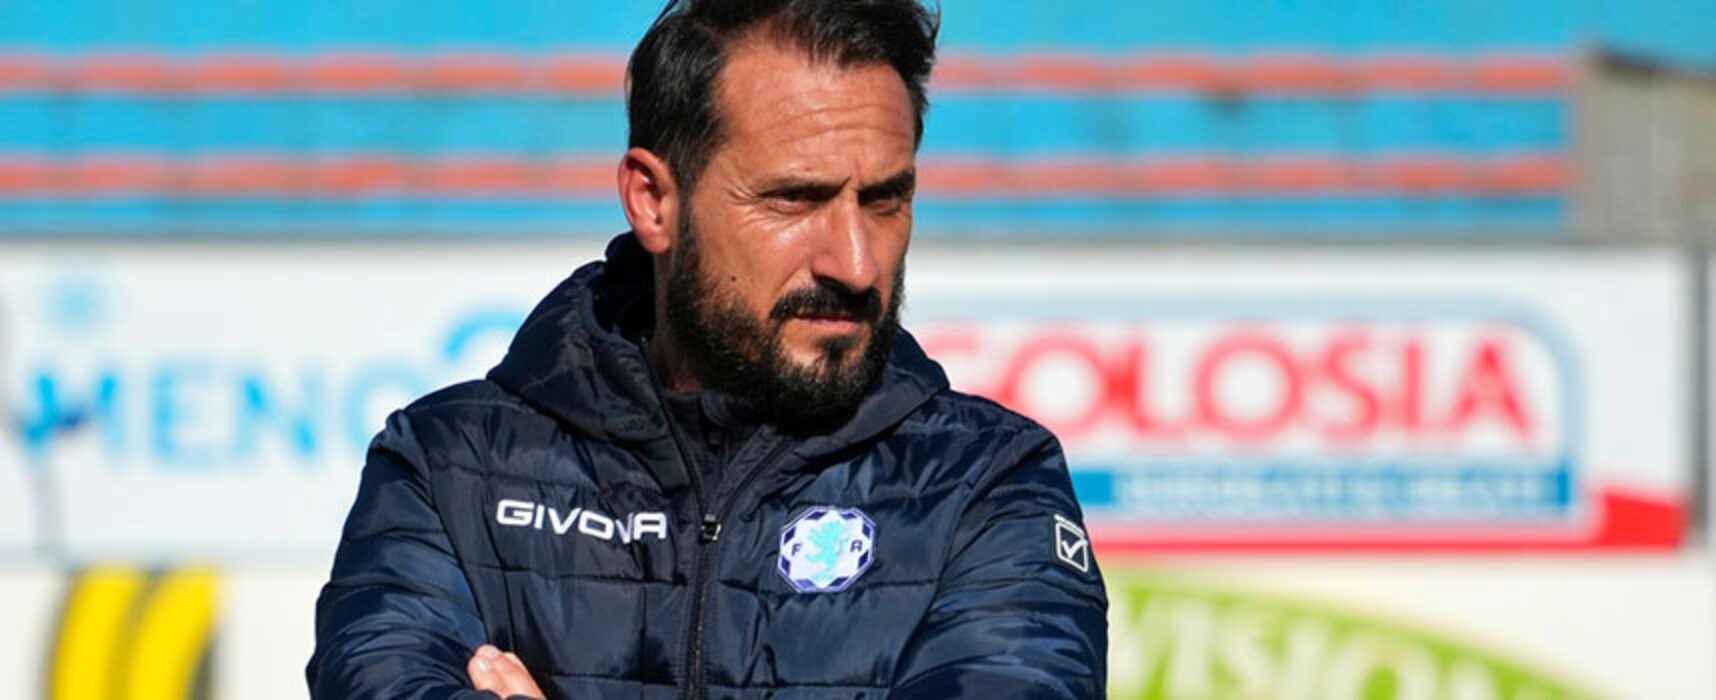 Giuseppe Scaringella è il nuovo tecnico del Bisceglie Calcio